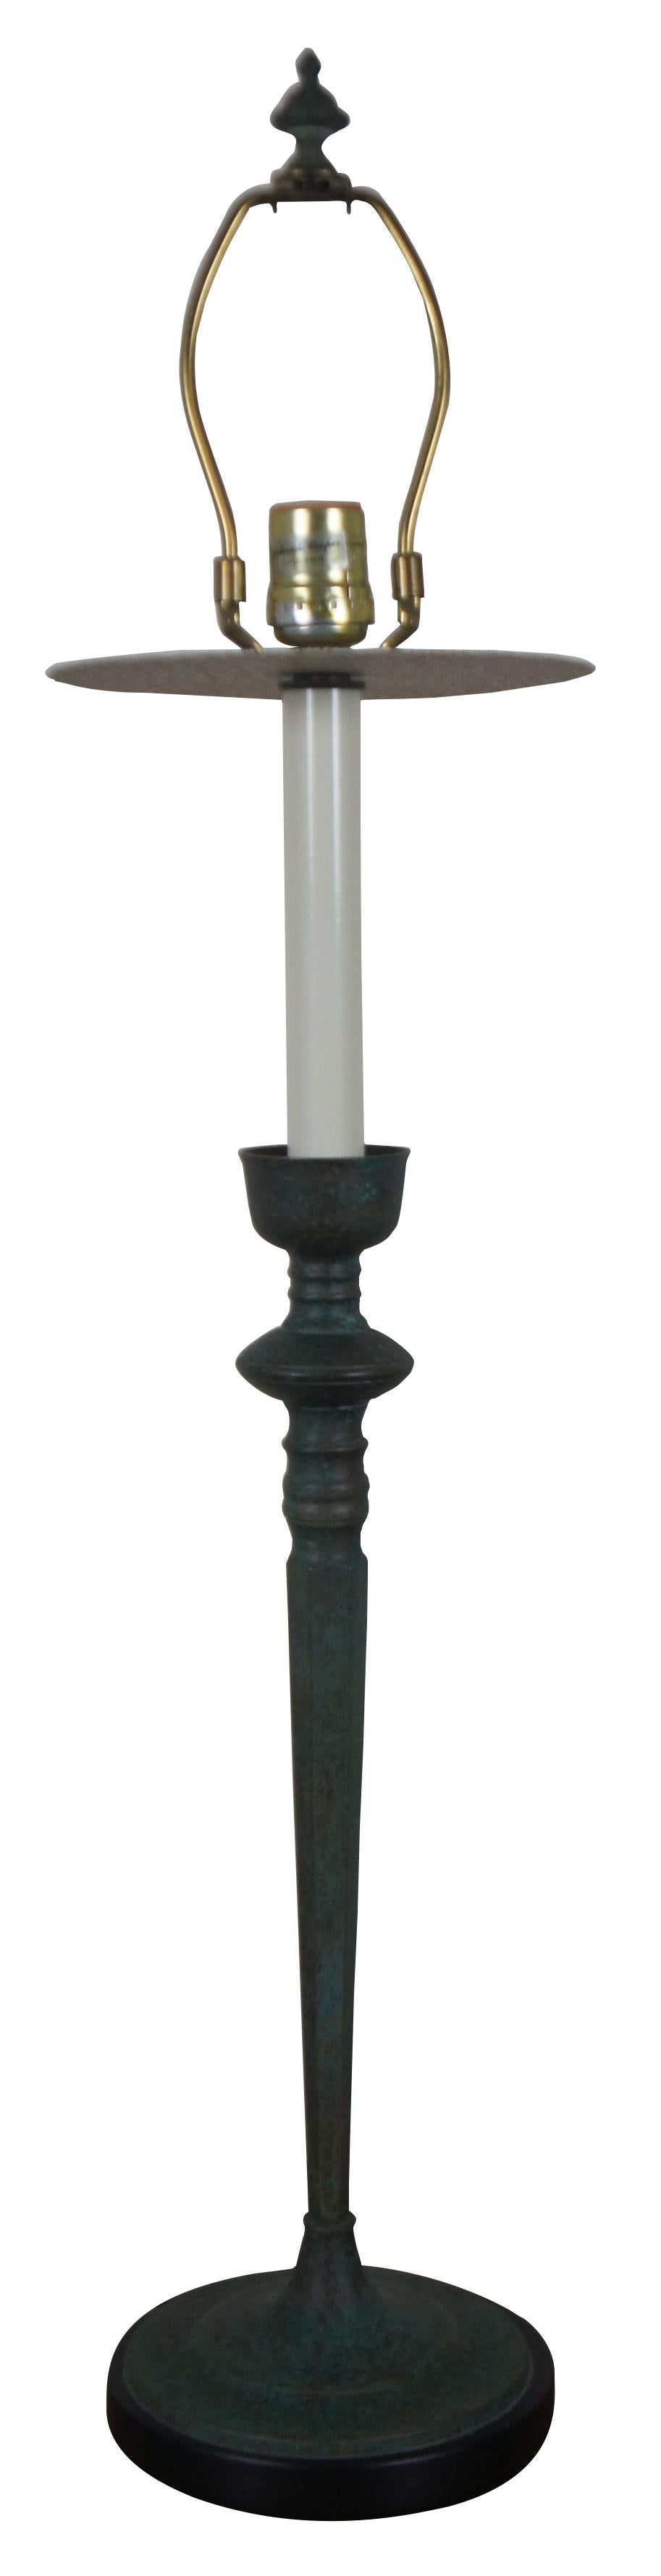 candlestick buffet lamp